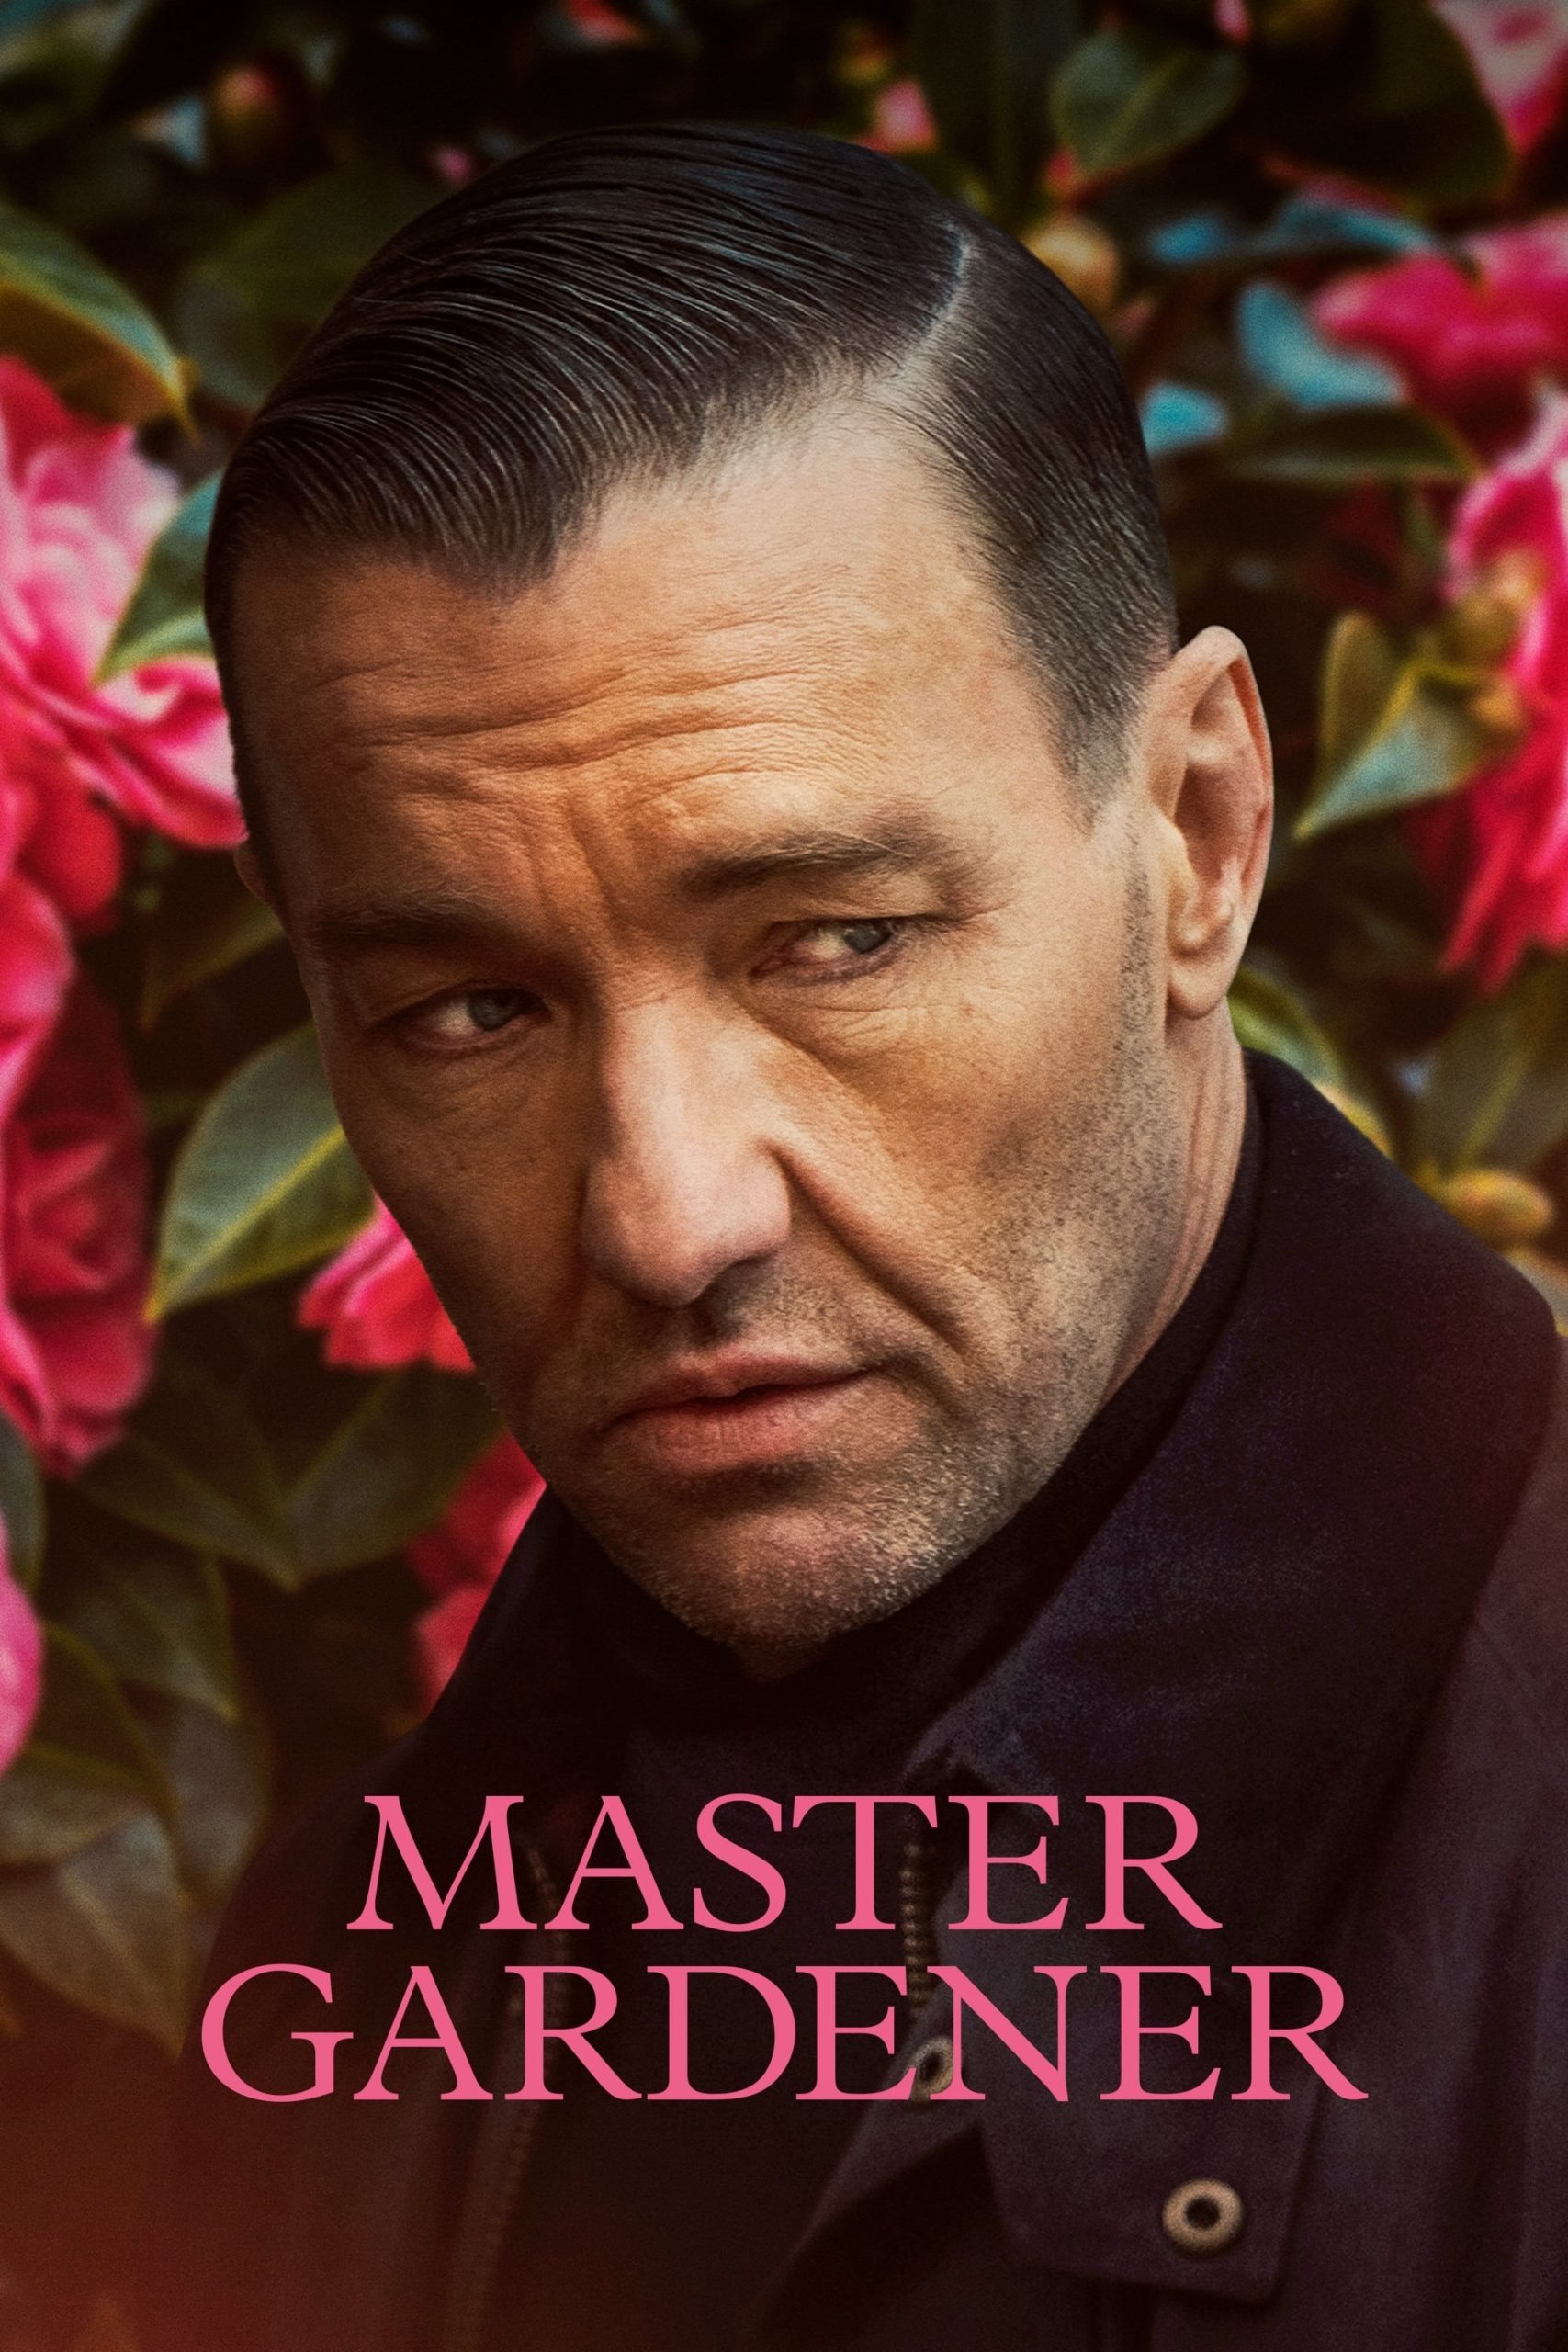 Poster for the movie "Master Gardener"